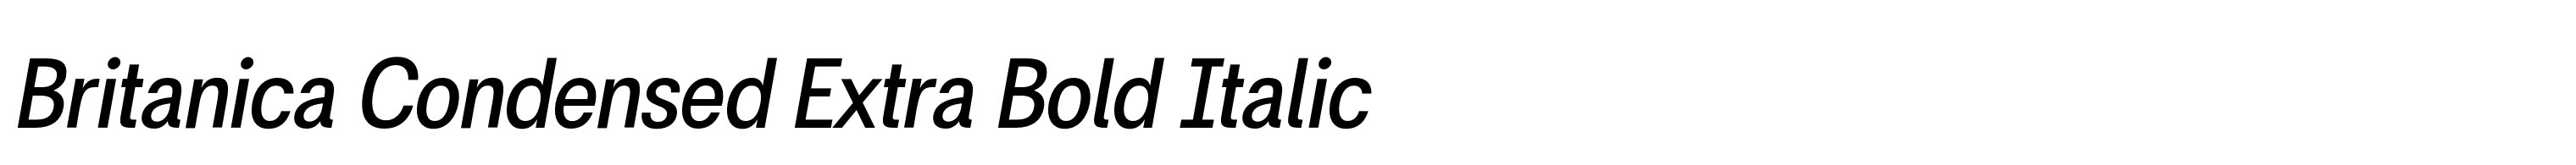 Britanica Condensed Extra Bold Italic